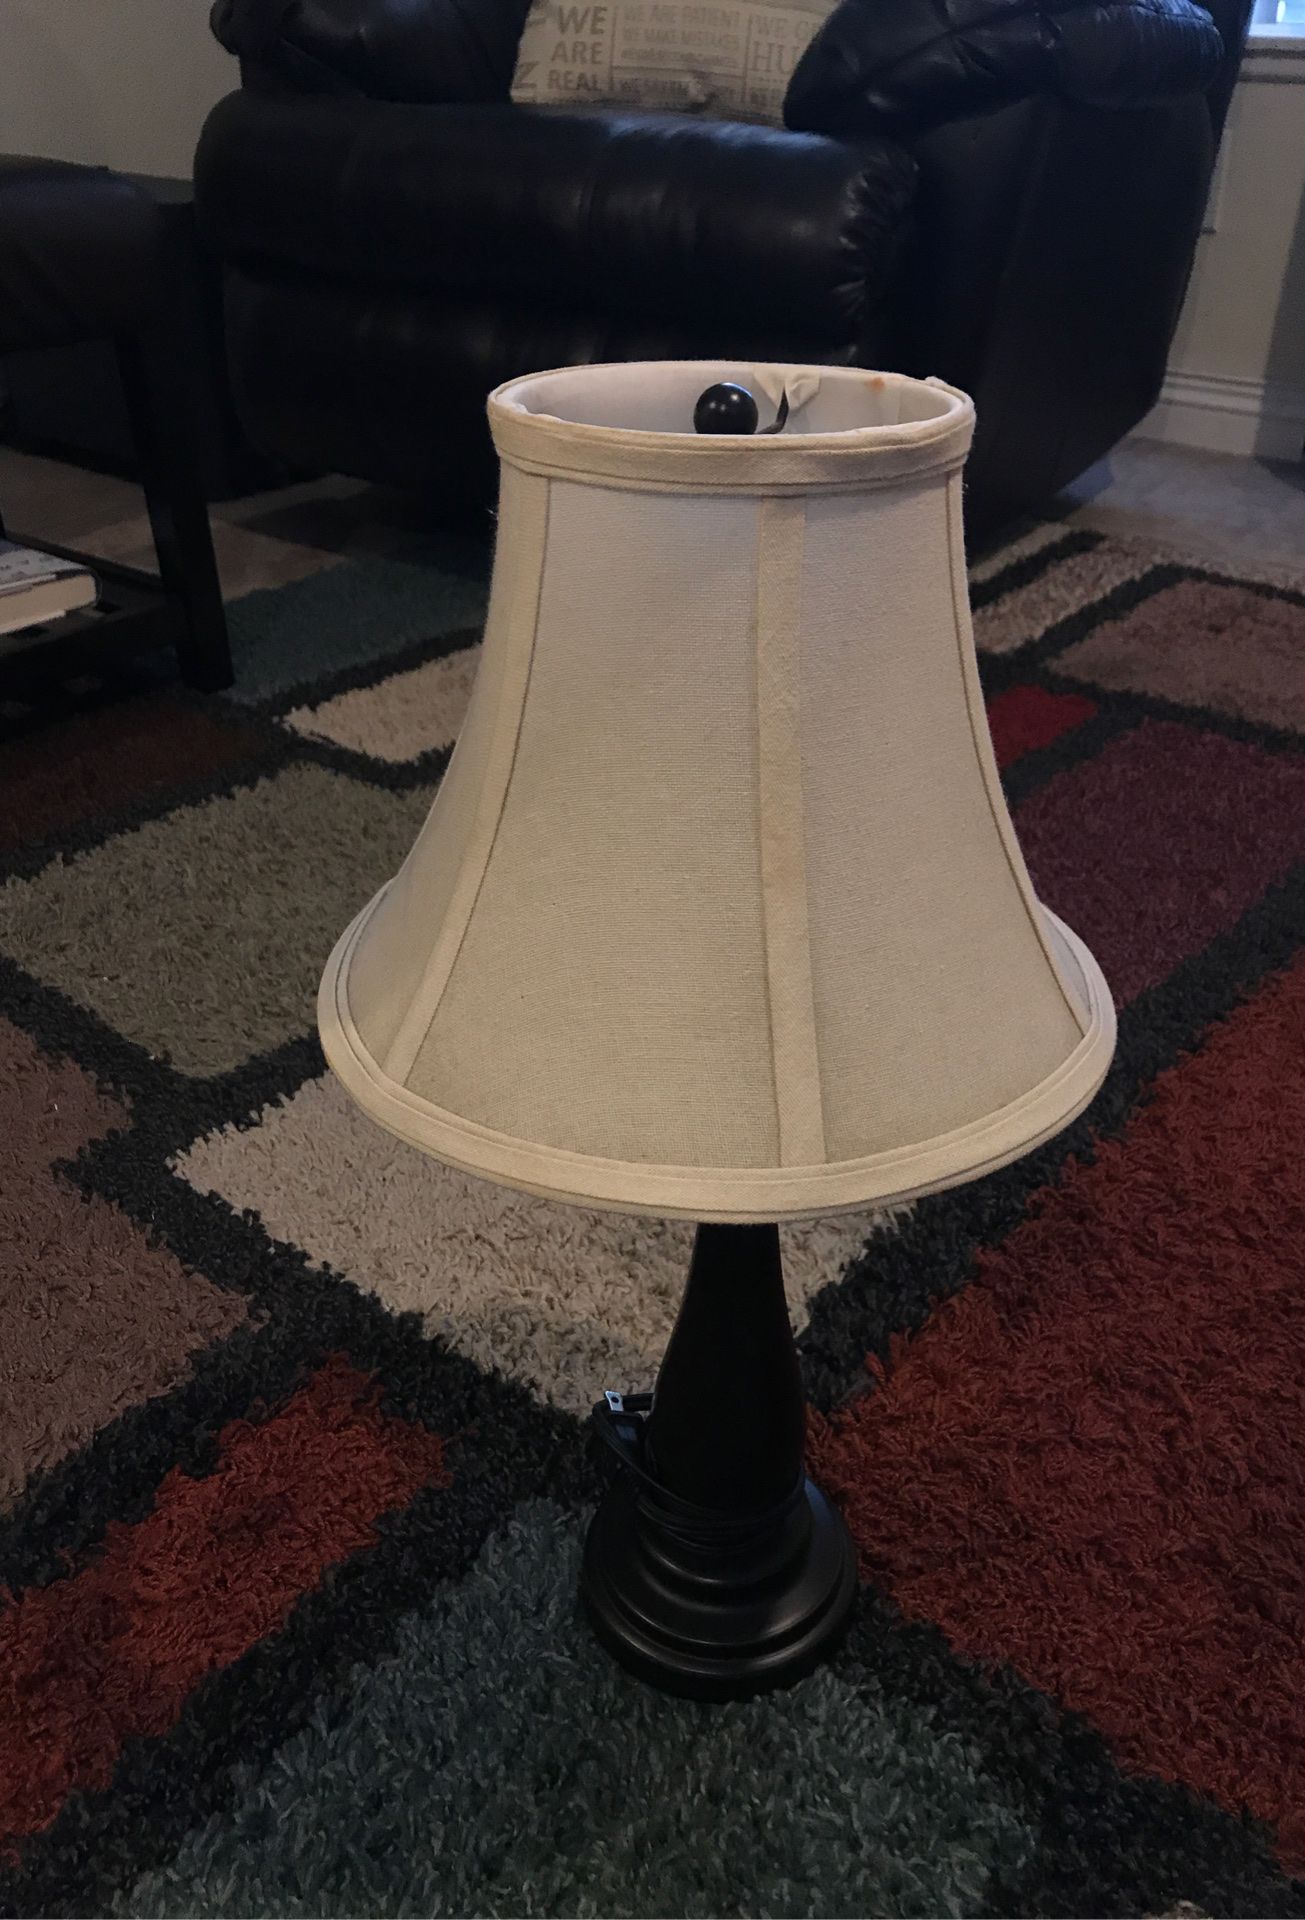 Antique lamp $10